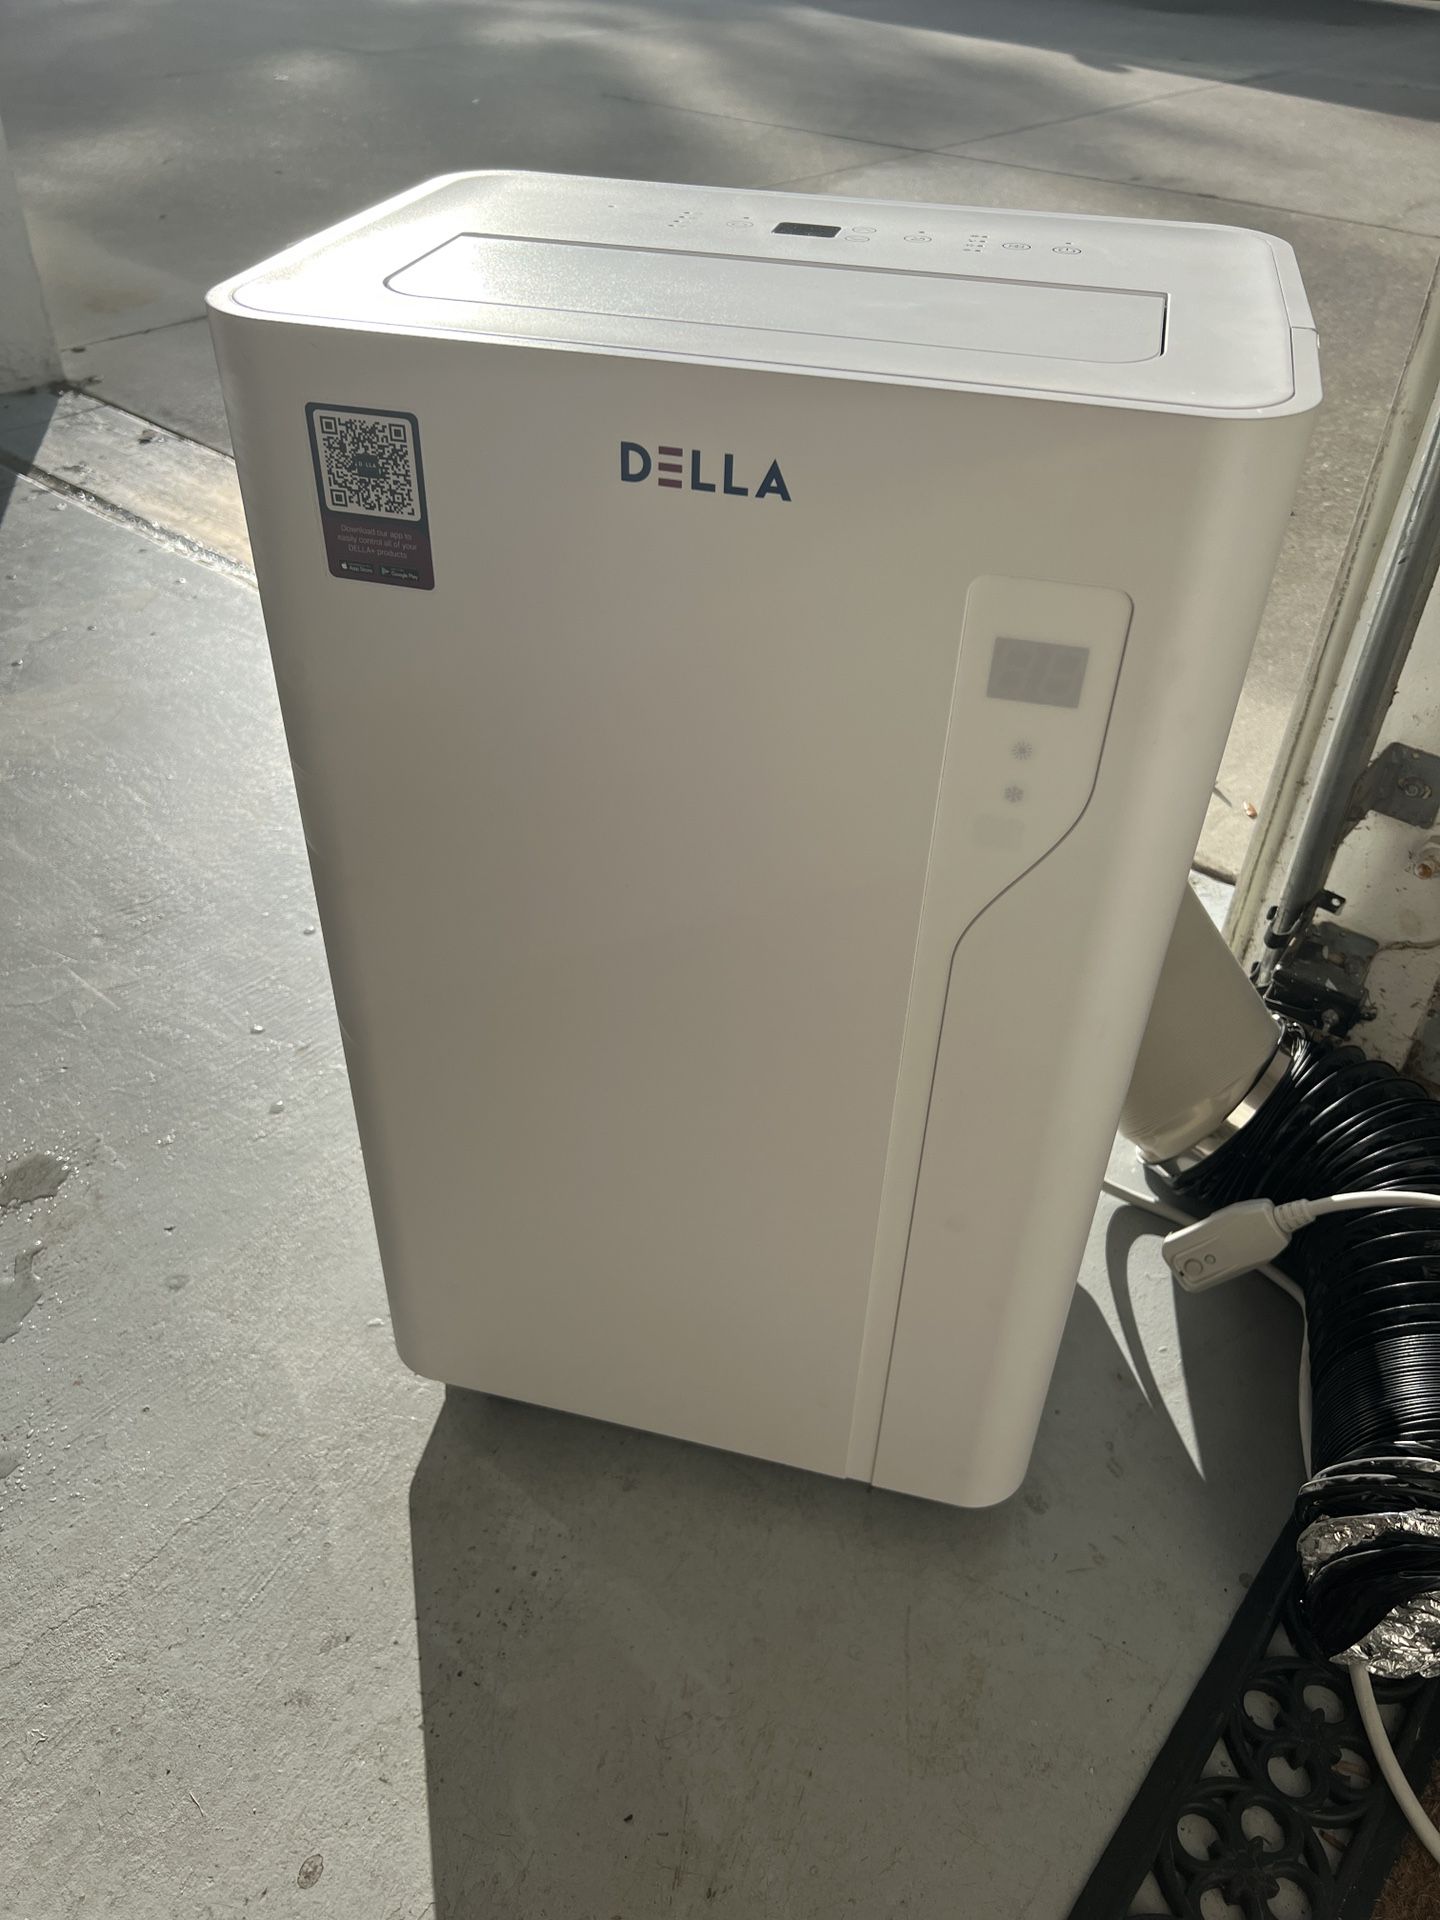 DELLA  Portable AC Unit with Remote Control Up To 650 Sq.Ft